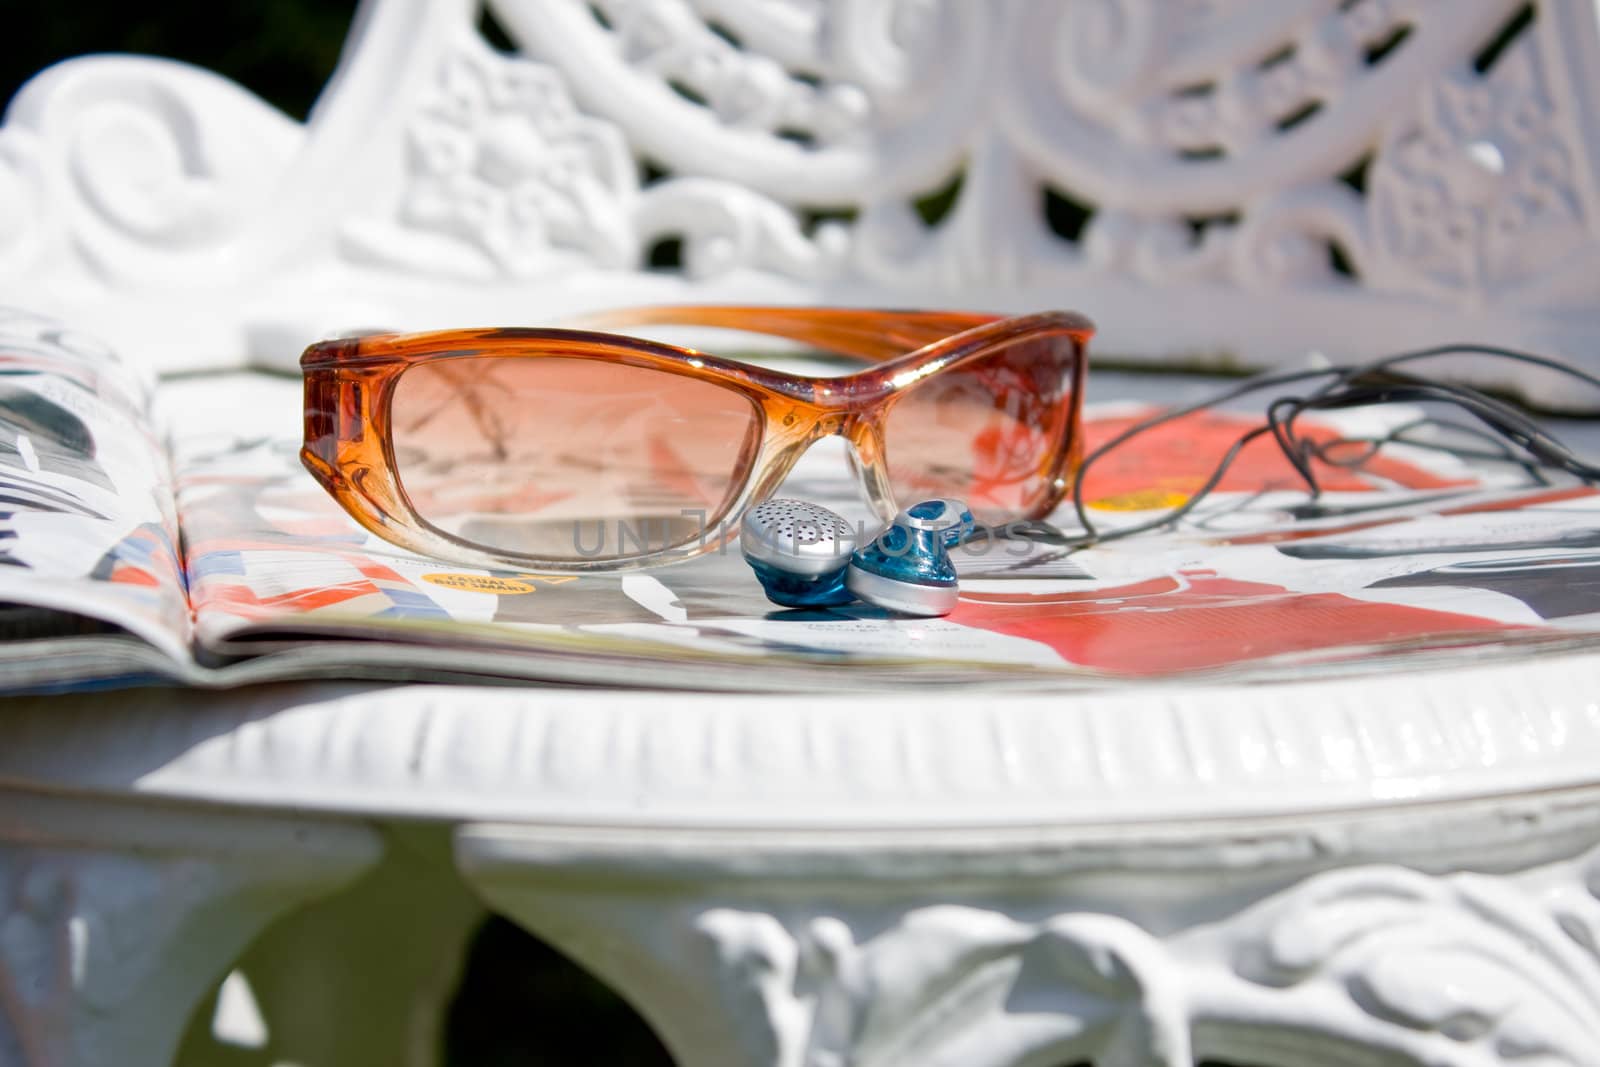 Sunglasses earphones and magazine left on a sunchair.